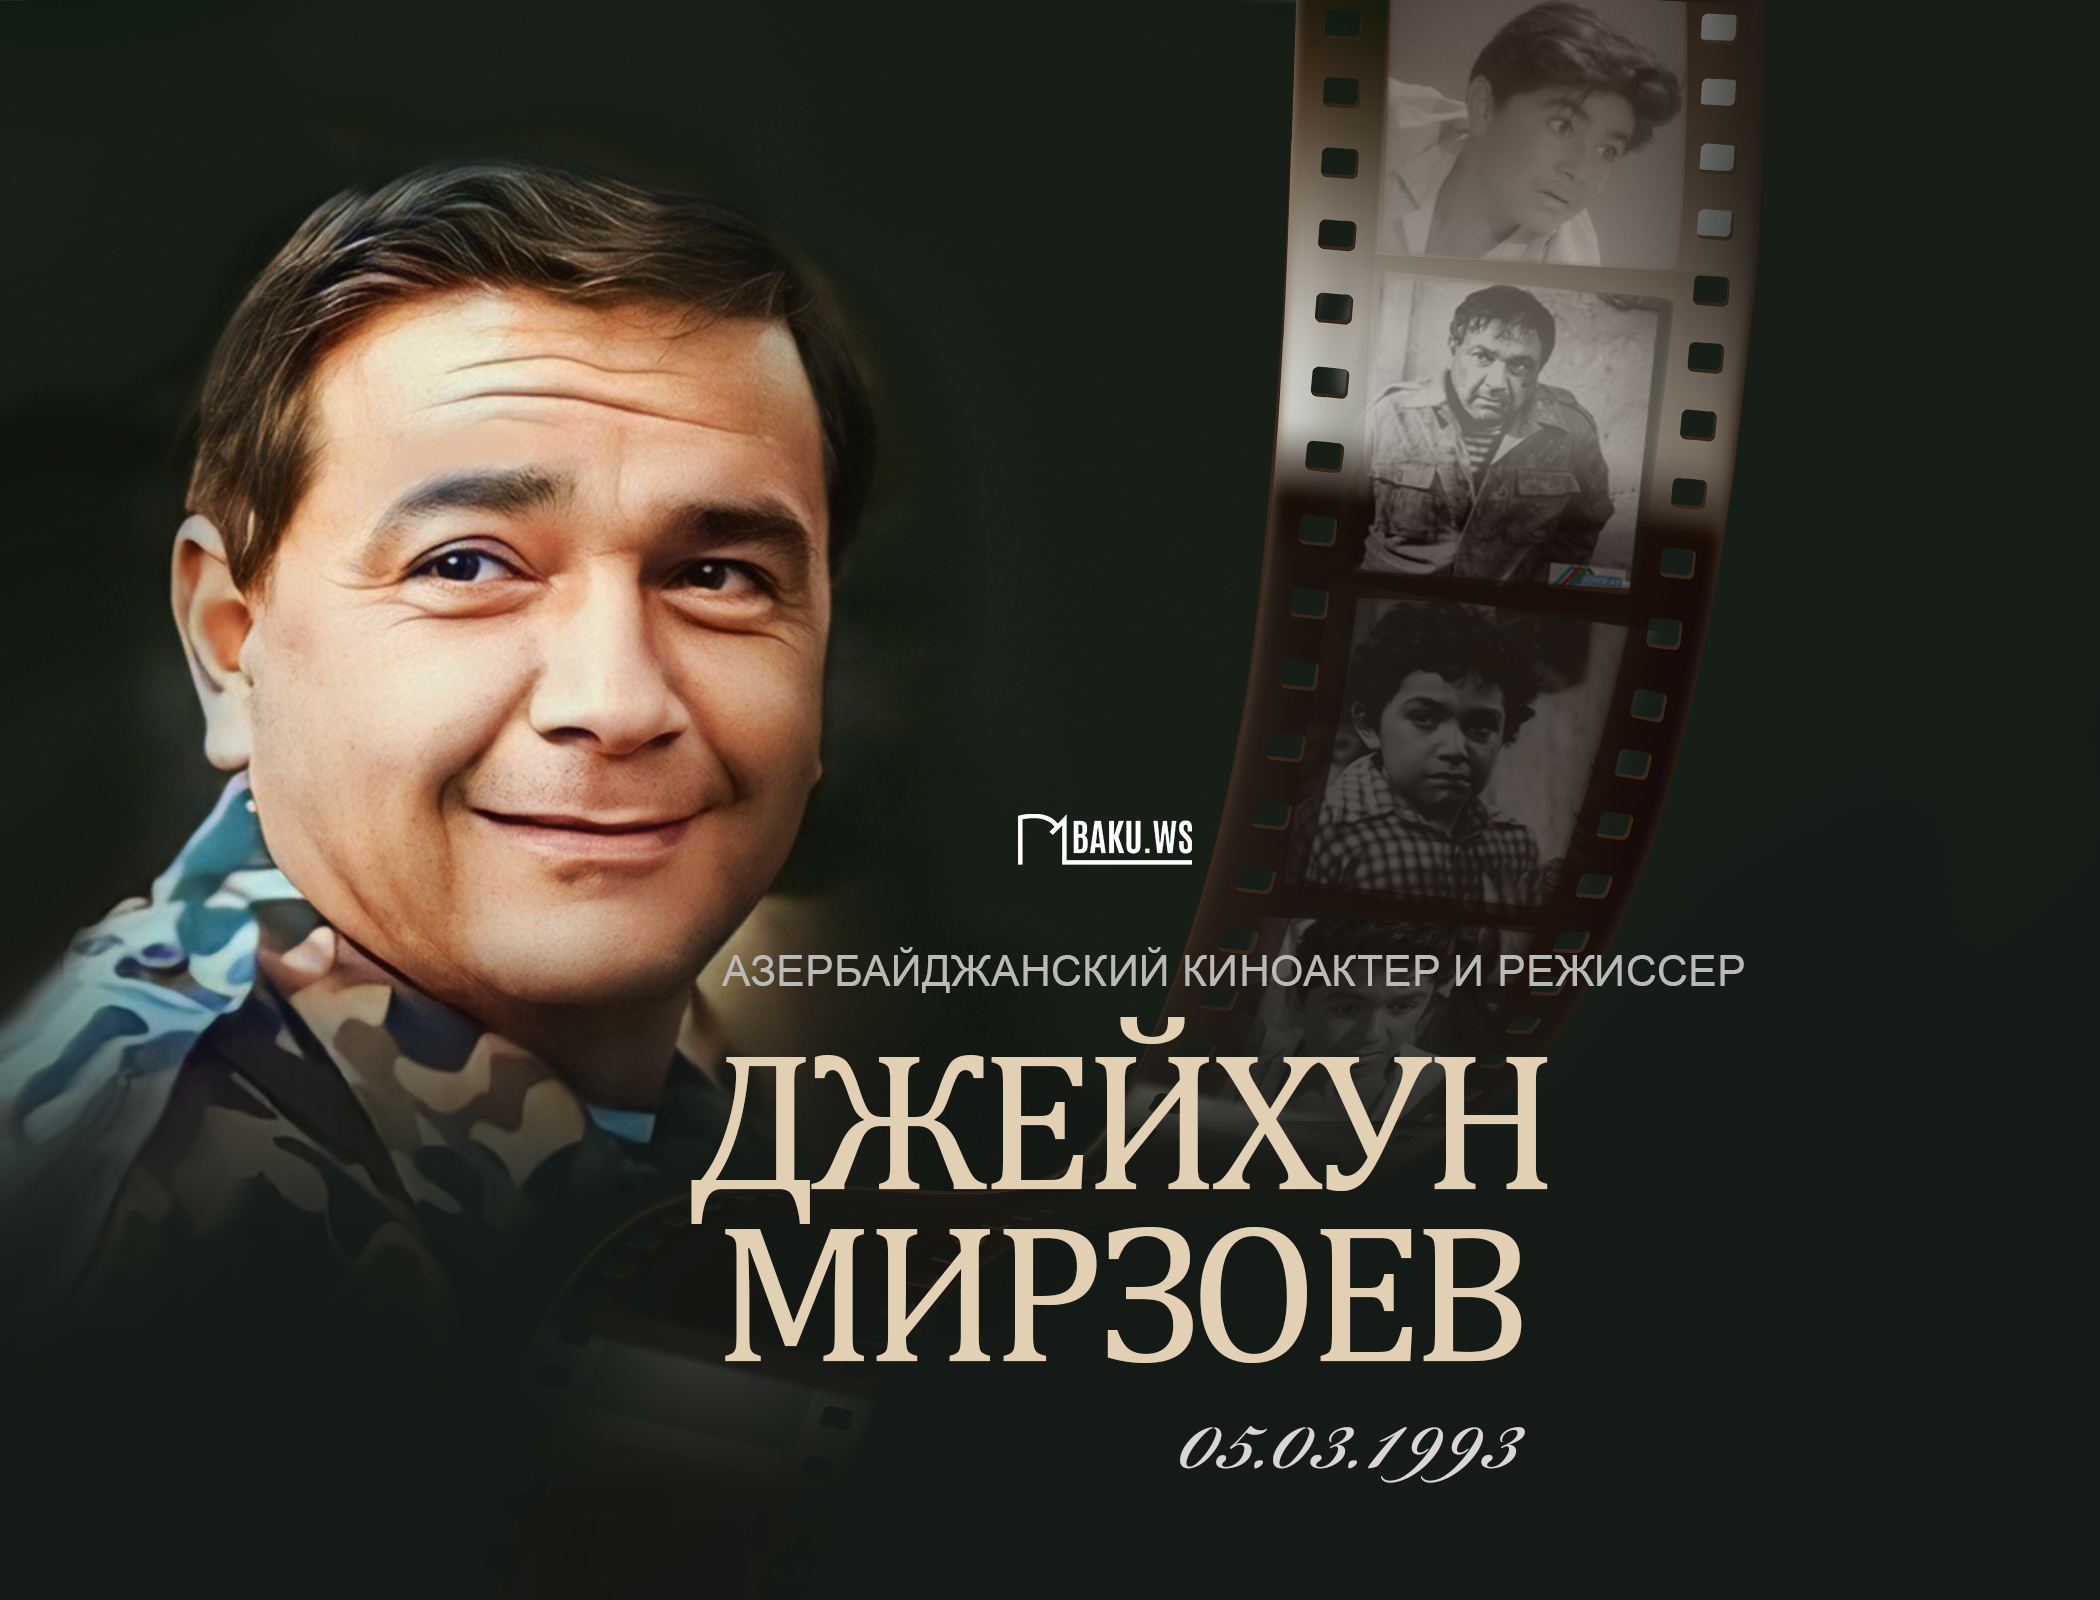 Сегодня день памяти Джейхуна Мирзоева